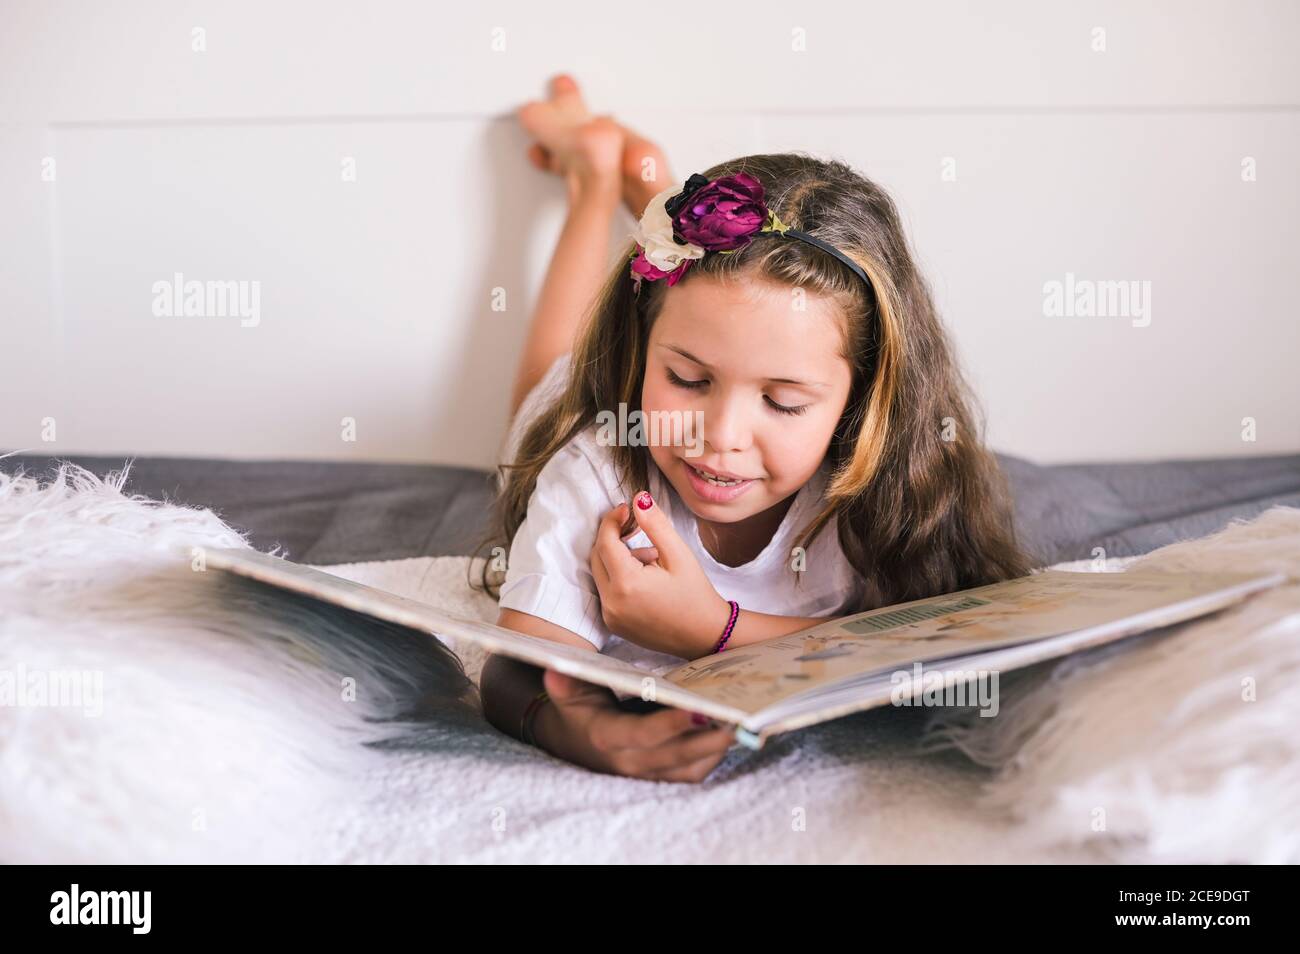 La studentessa sta leggendo. Bambina che legge un libro nella camera da letto sul letto. Educazione e hobby dei bambini. Colori diurni e luminosi. Spazio di copia. Alta qualità . Messa a fuoco morbida Foto Stock